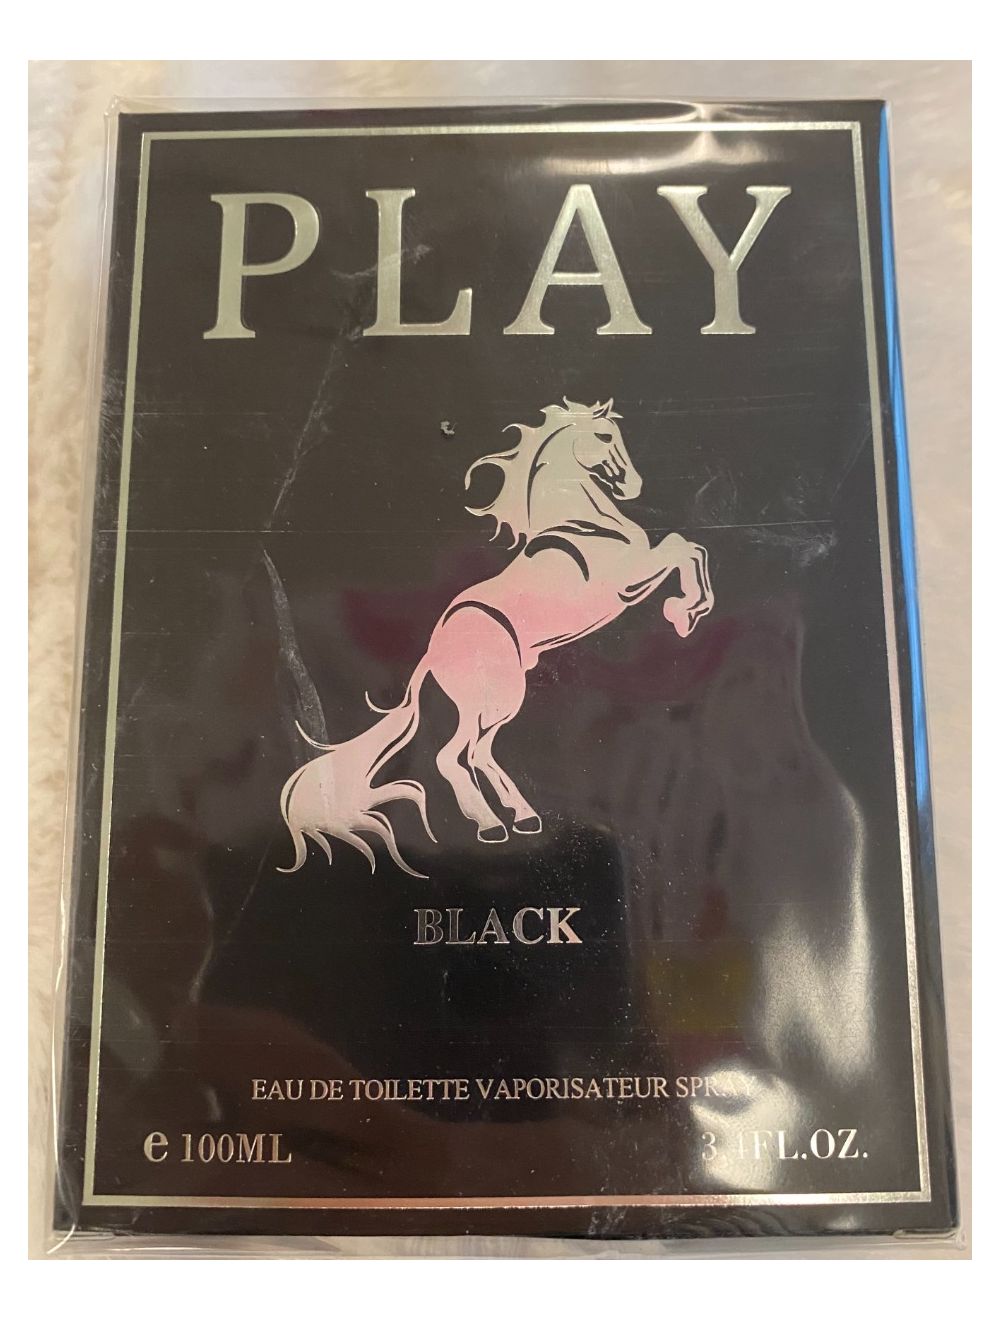 EBC Play Black Fragrance for Men